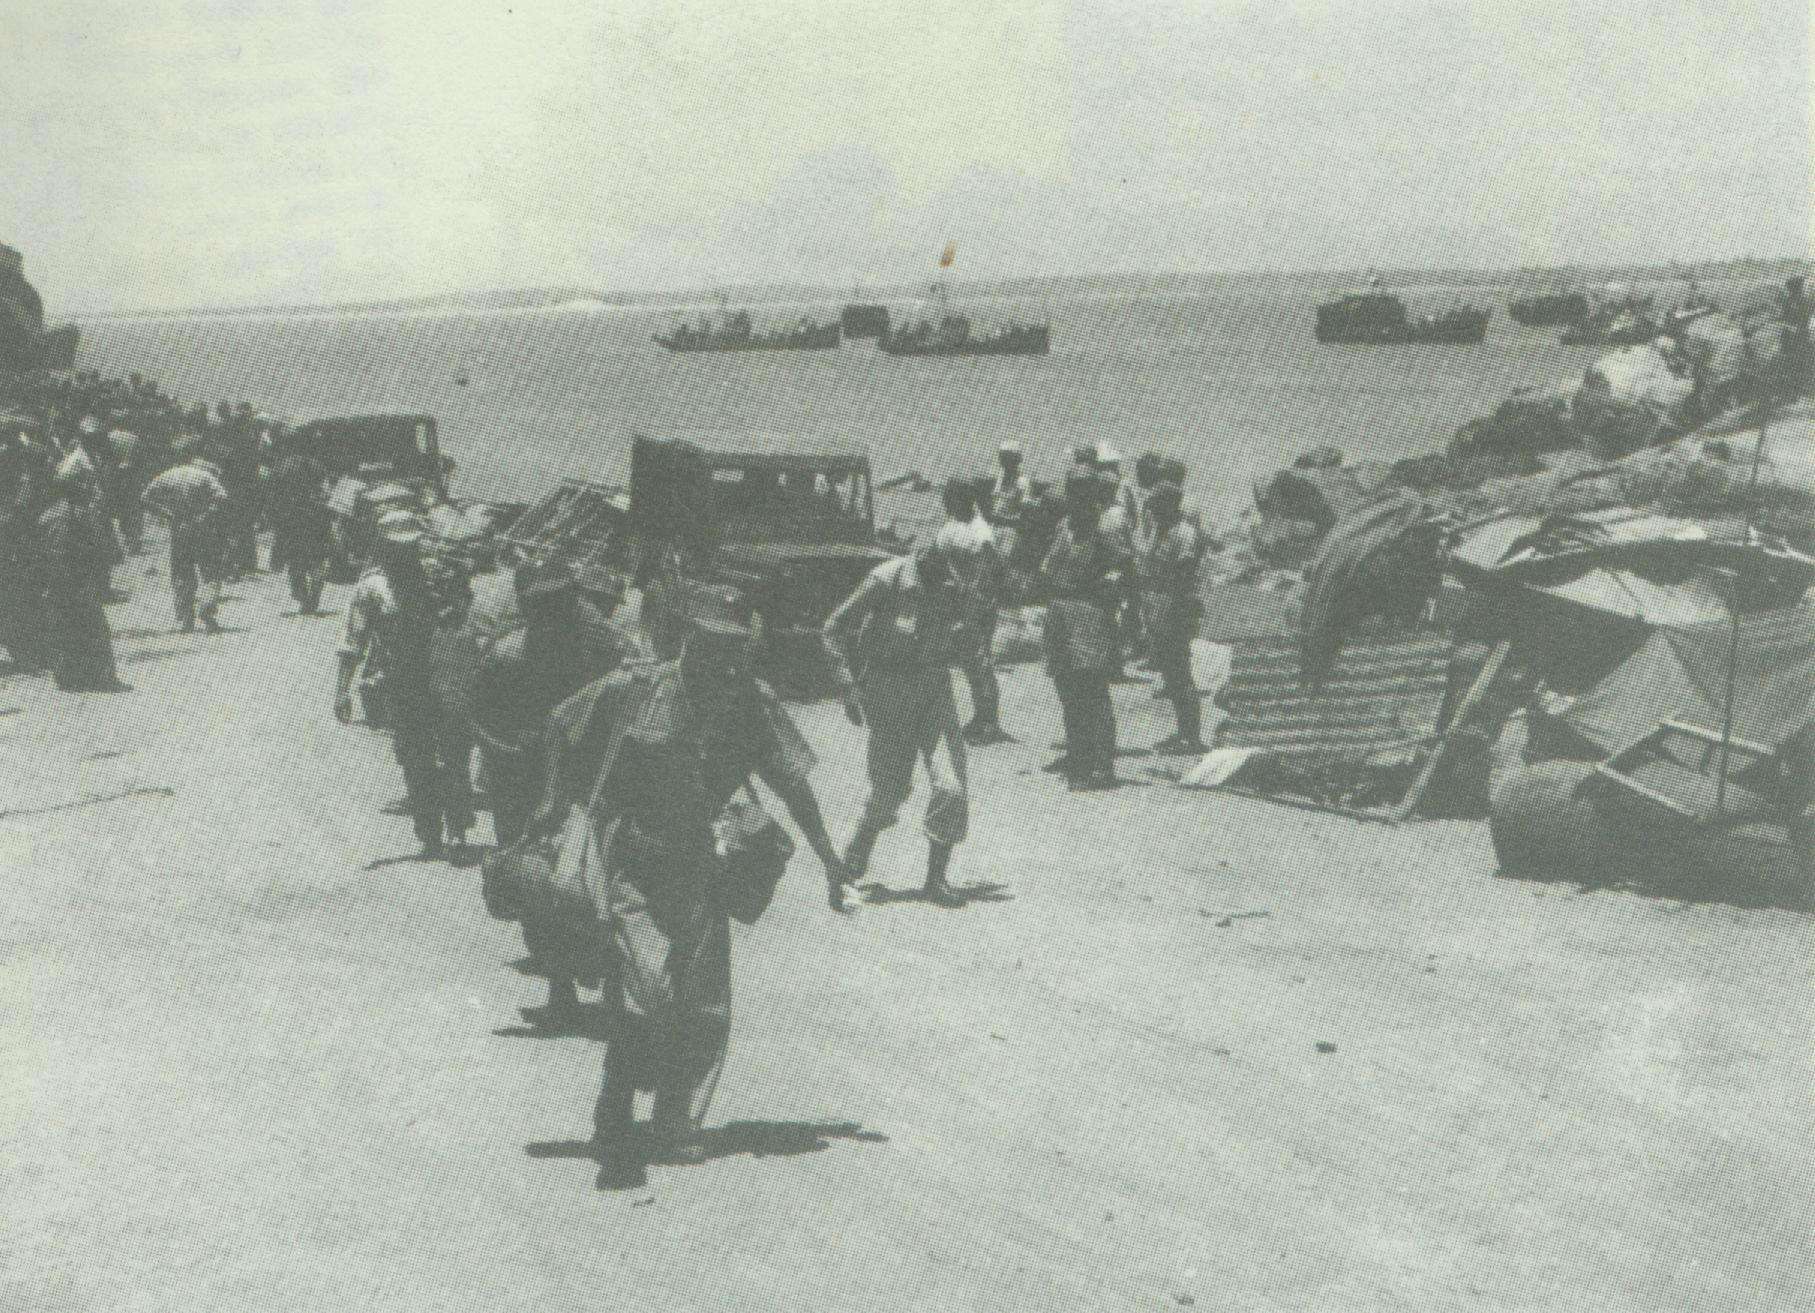 1953年东山岛战役,老蒋最后一次反攻大陆,国民党伞兵精锐被全歼